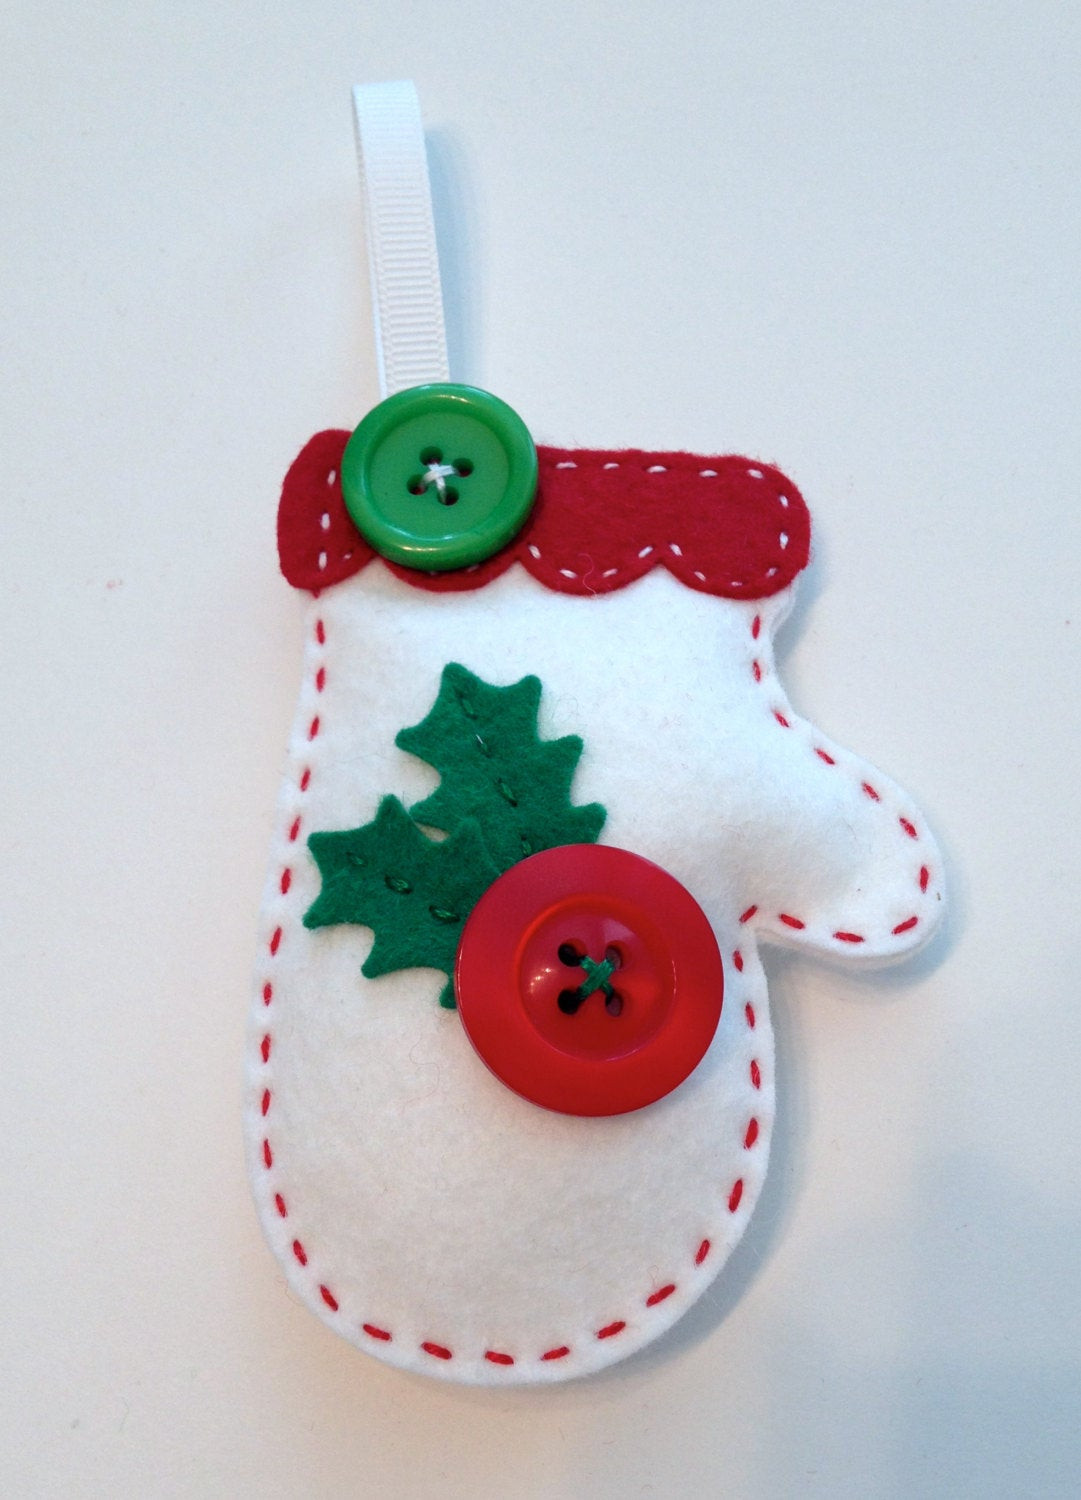 DIY Felt Christmas Ornaments
 DIY Felt Holly Mitten Ornament KIT by PolkaDotCreek on Etsy